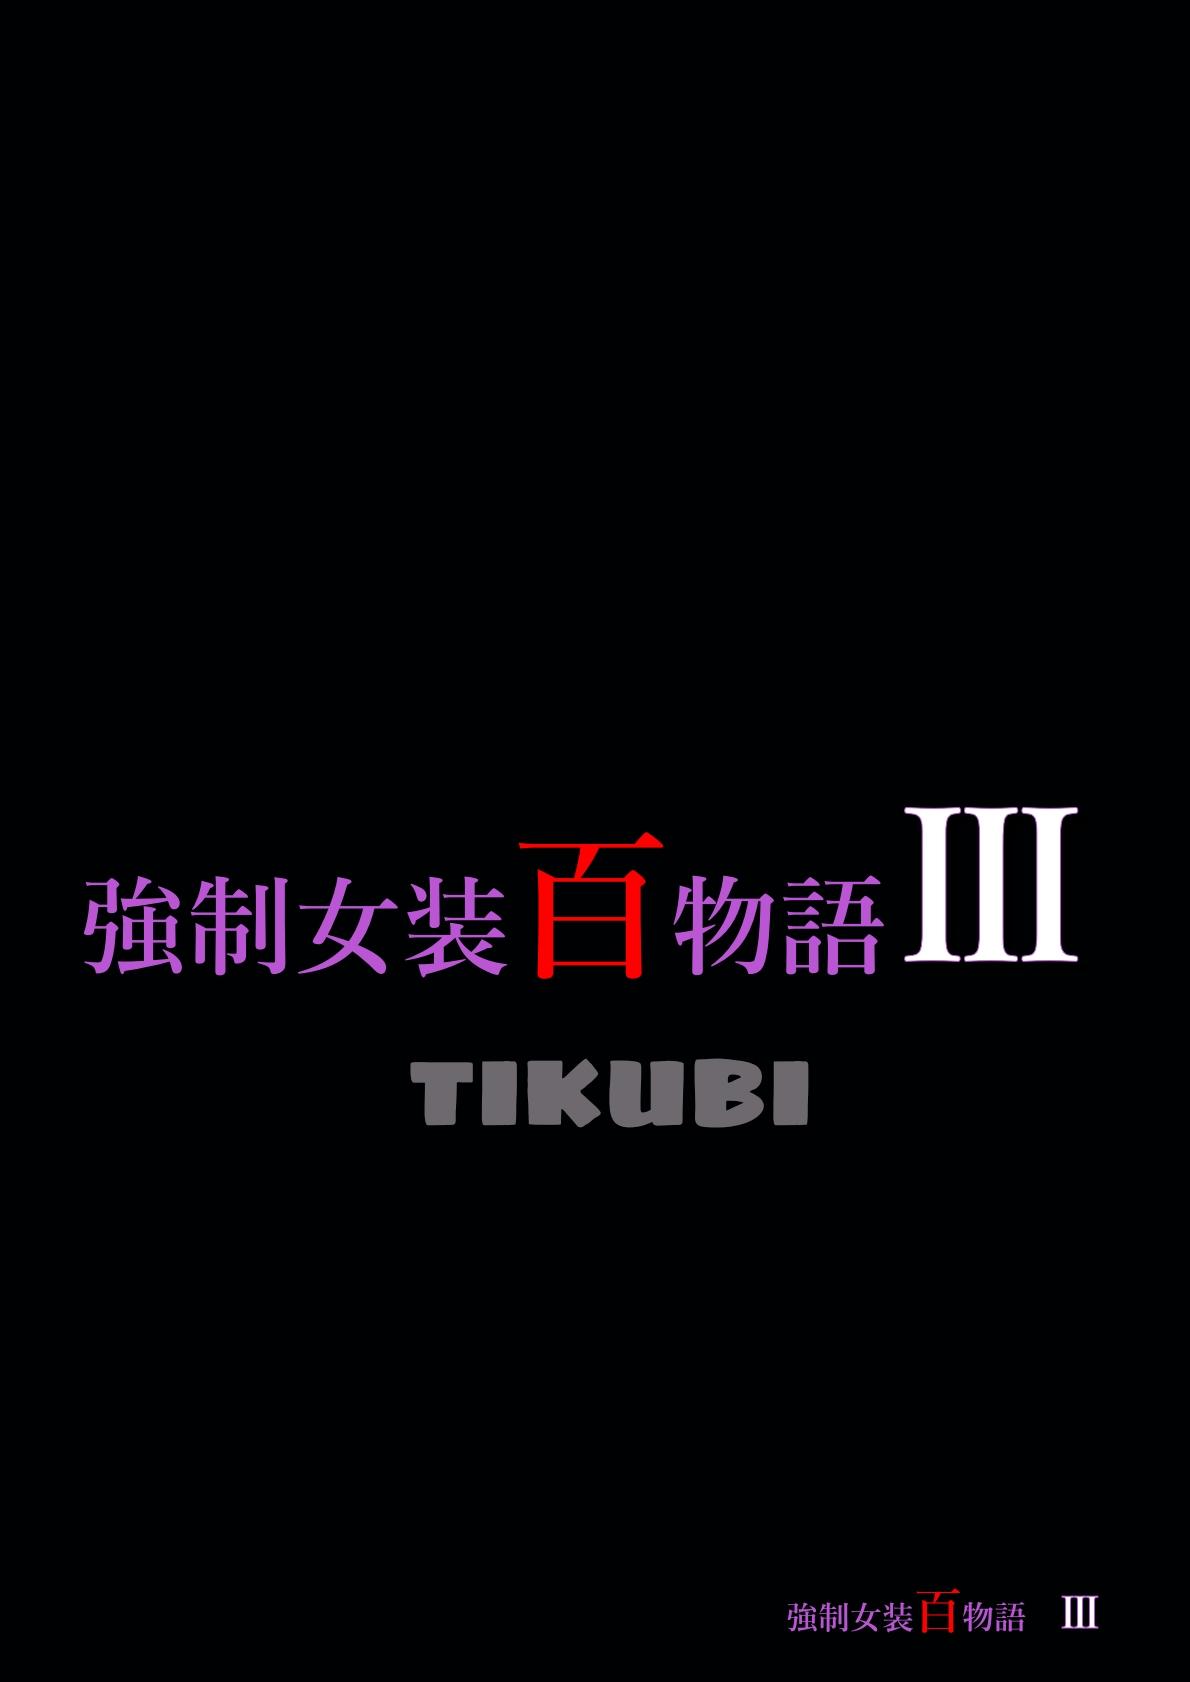 強制女装百物語III「TIKUBI」   0